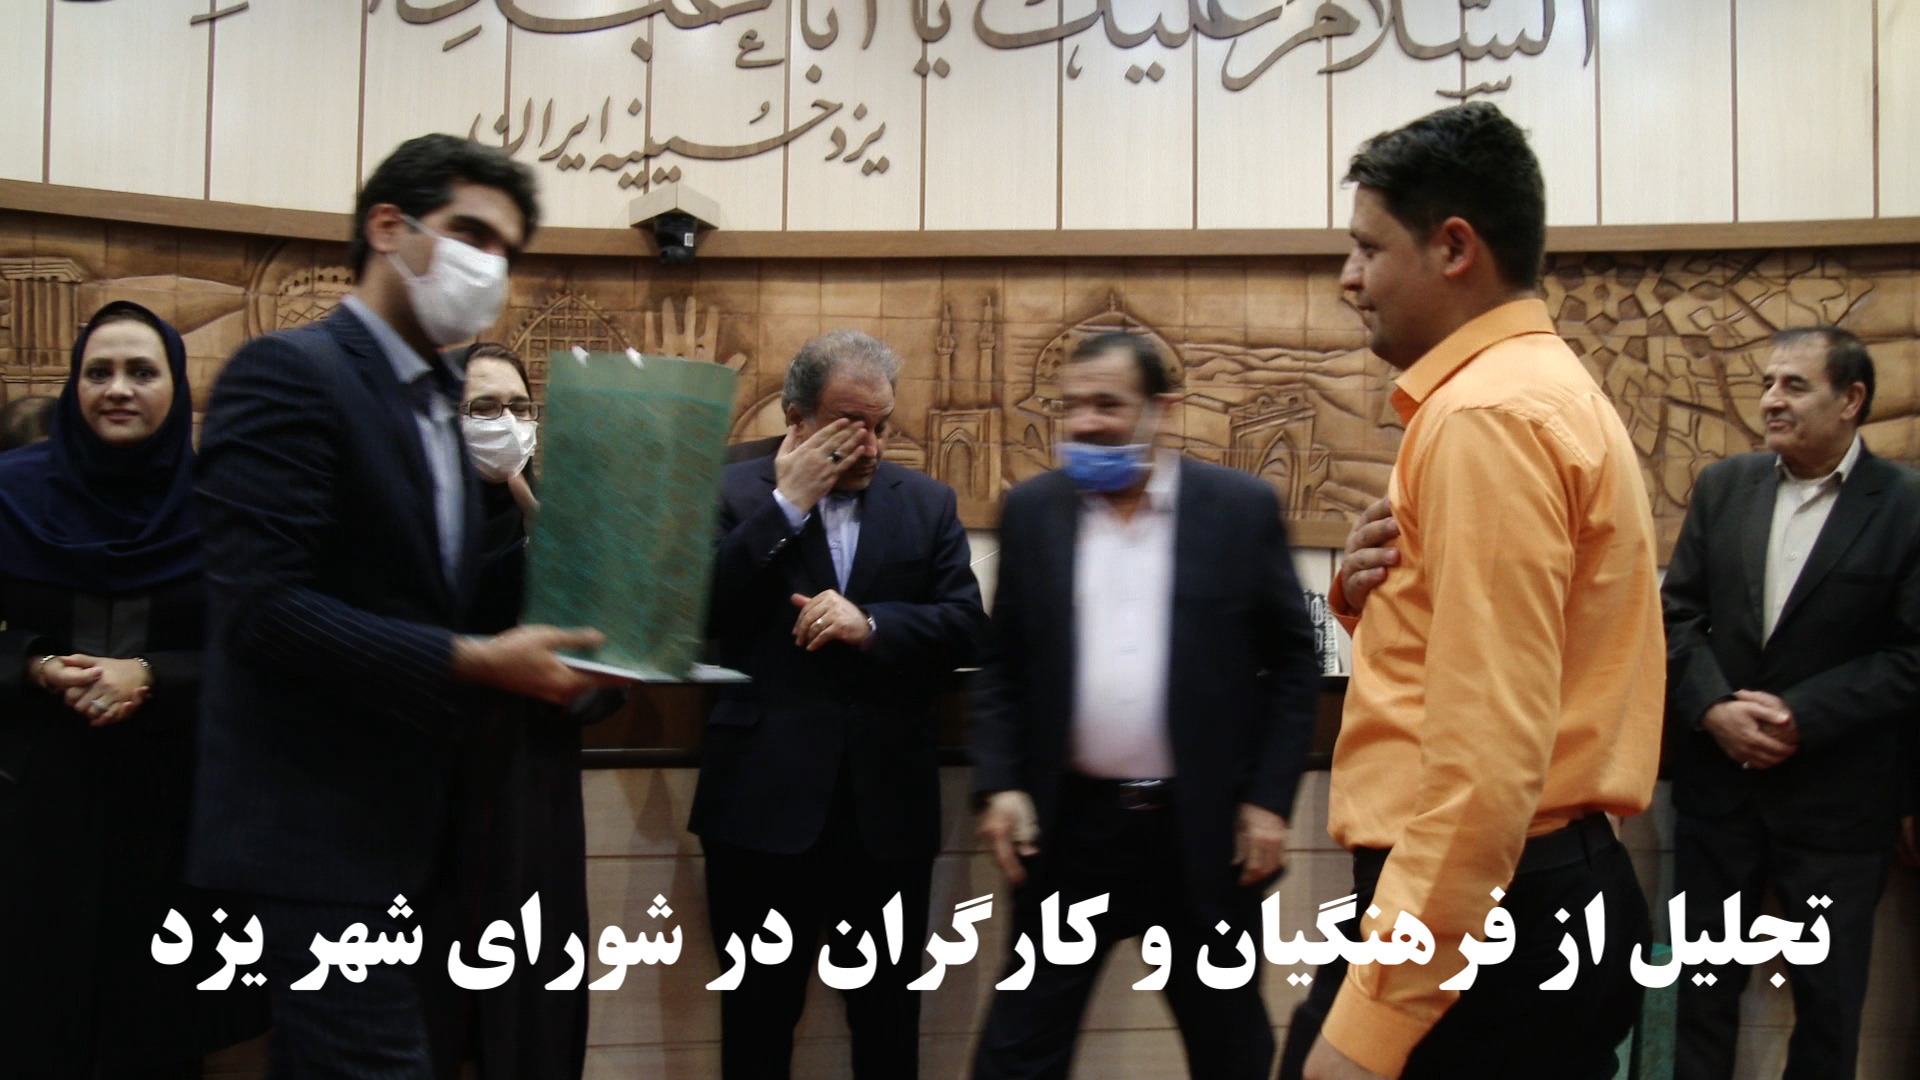 فیلم:تجلیل از کارگران و فرهنگیان در شورای شهر یزد